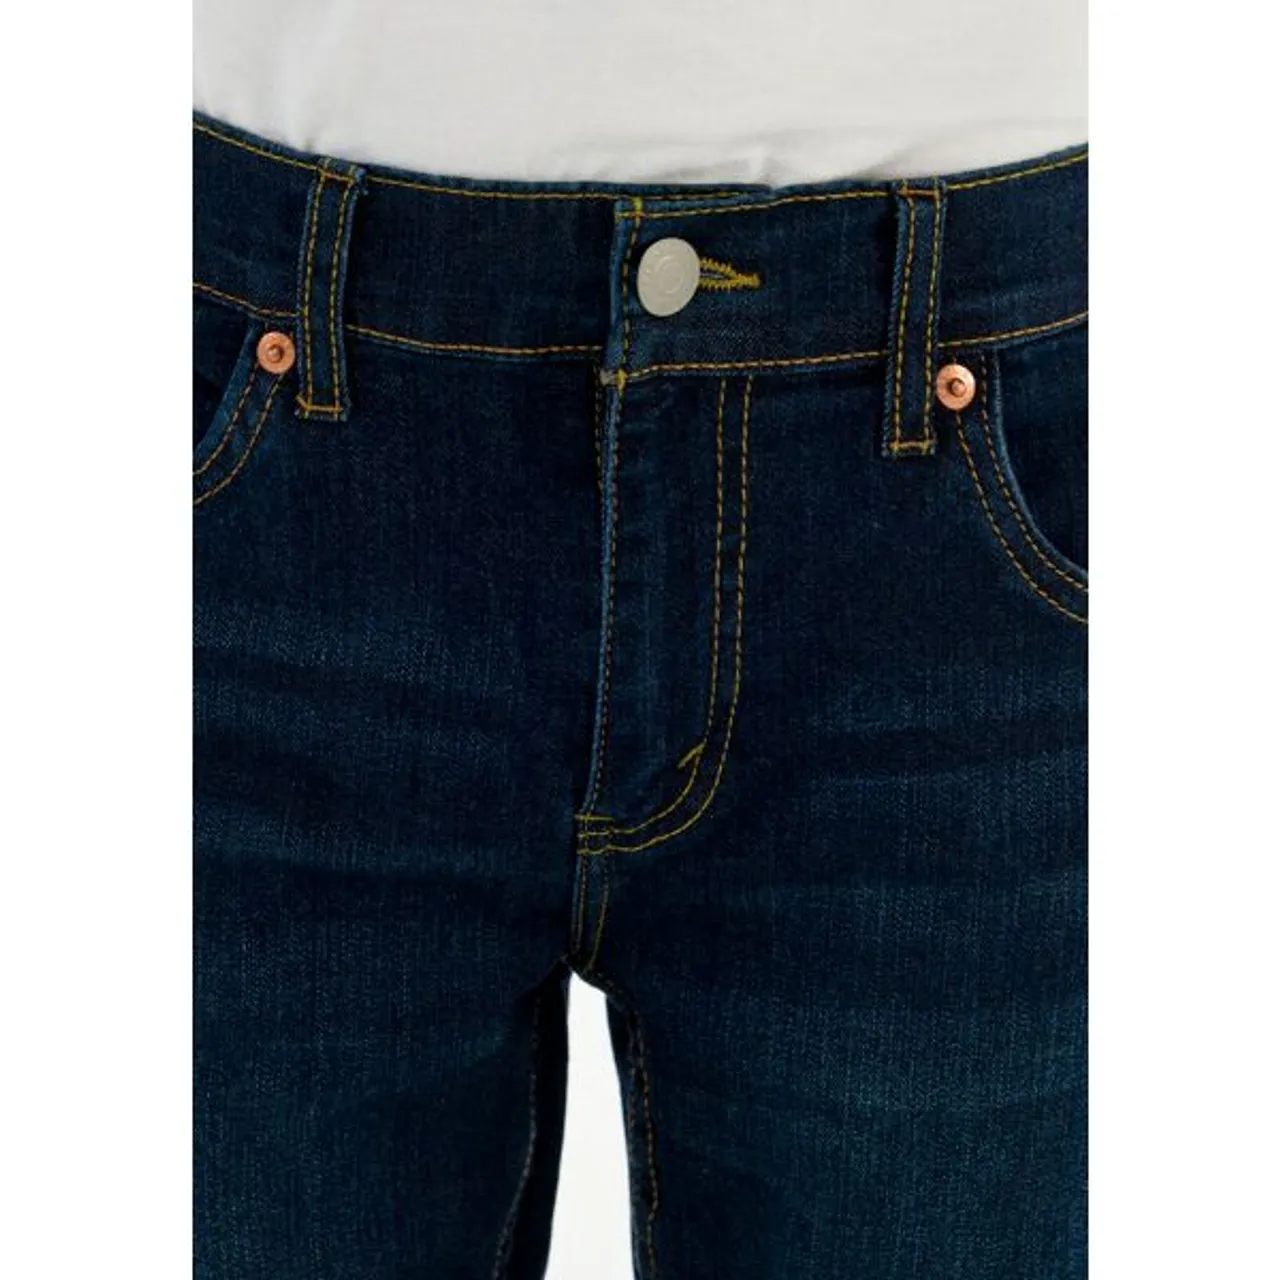 Stretch-Jeans LEVI'S KIDS "LVB 512 SLIM TAPER JEAN" Gr. 8/128 (134), N-Gr, blau (dark blue used) Jungen Jeans